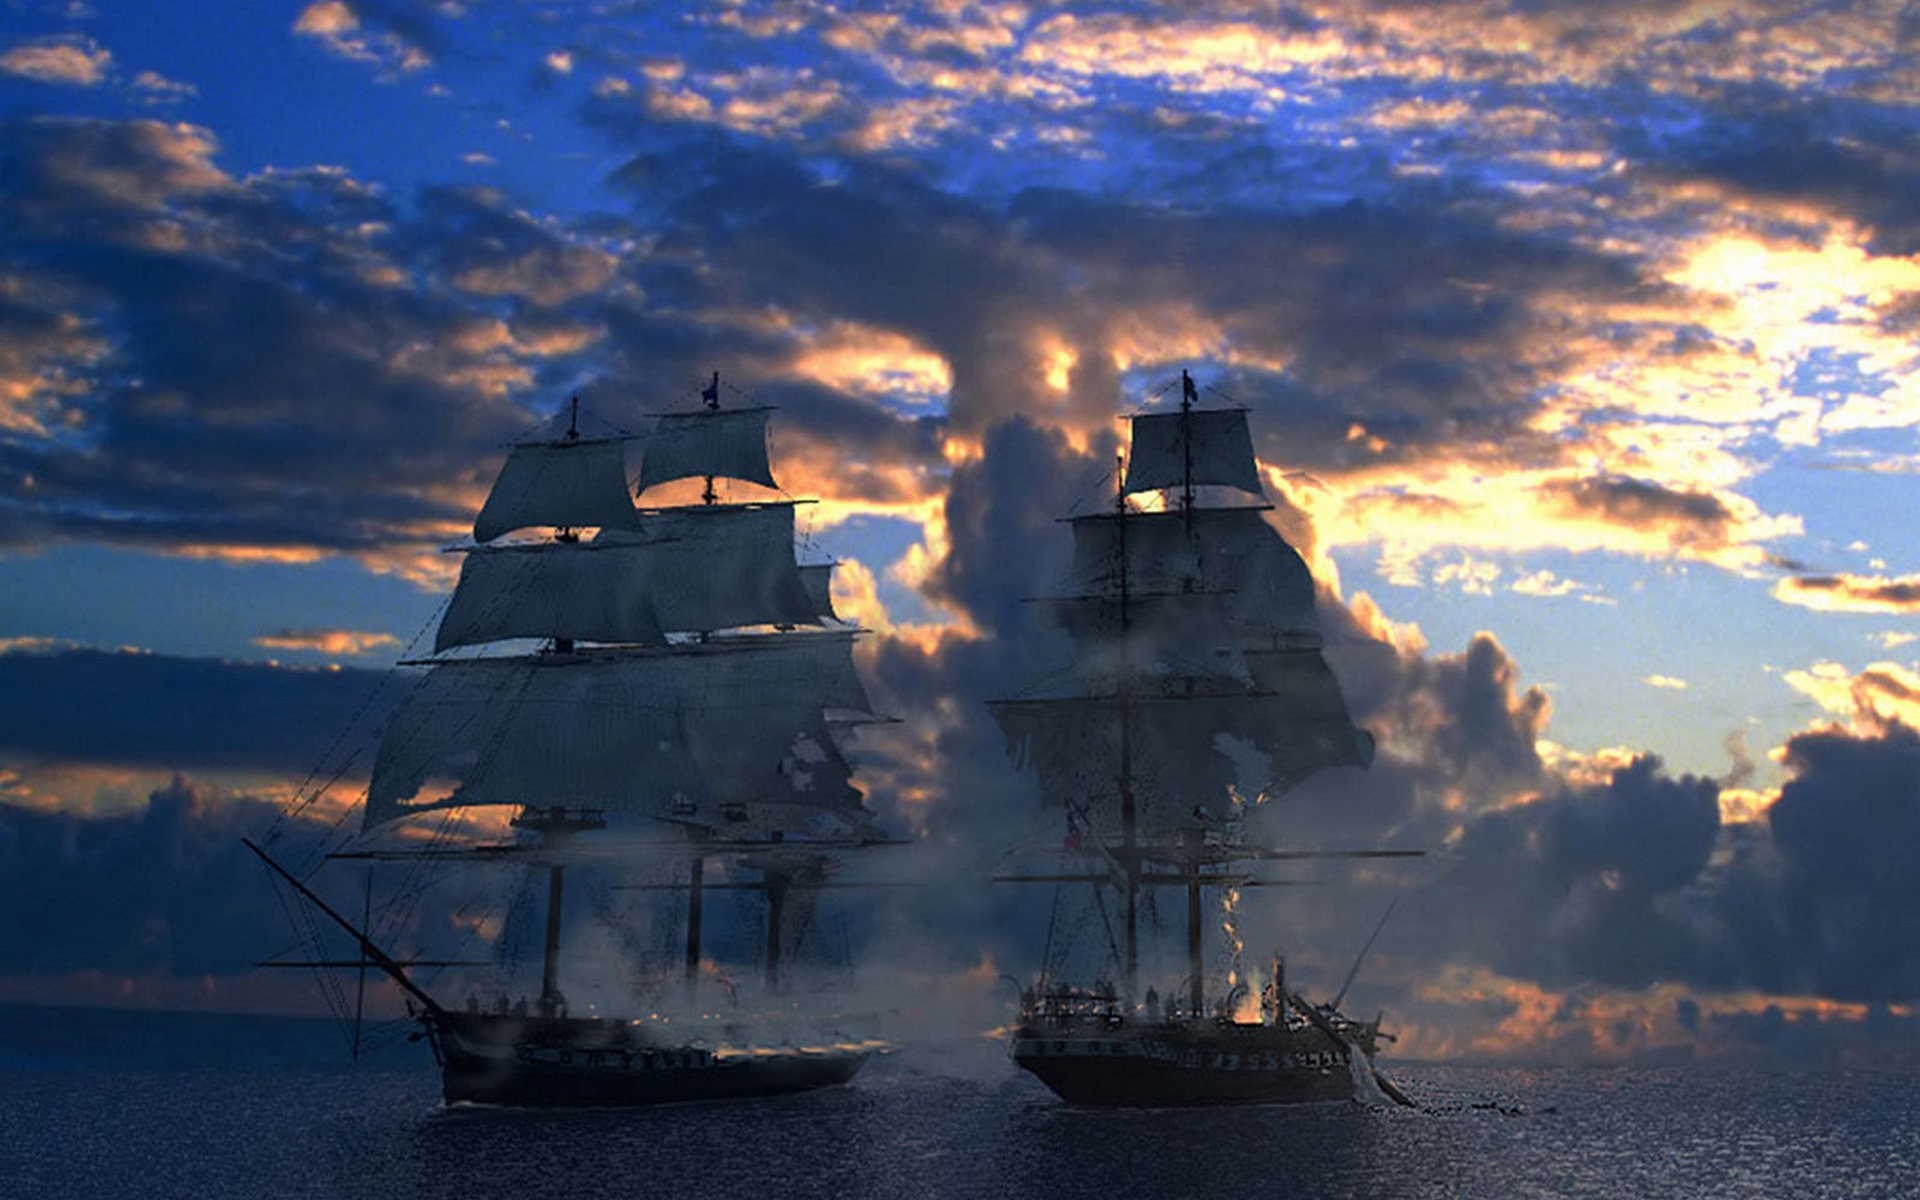 Корабли постоят слушать. Фрегат Орел 1668. Парусный корабль. Корабль в море.